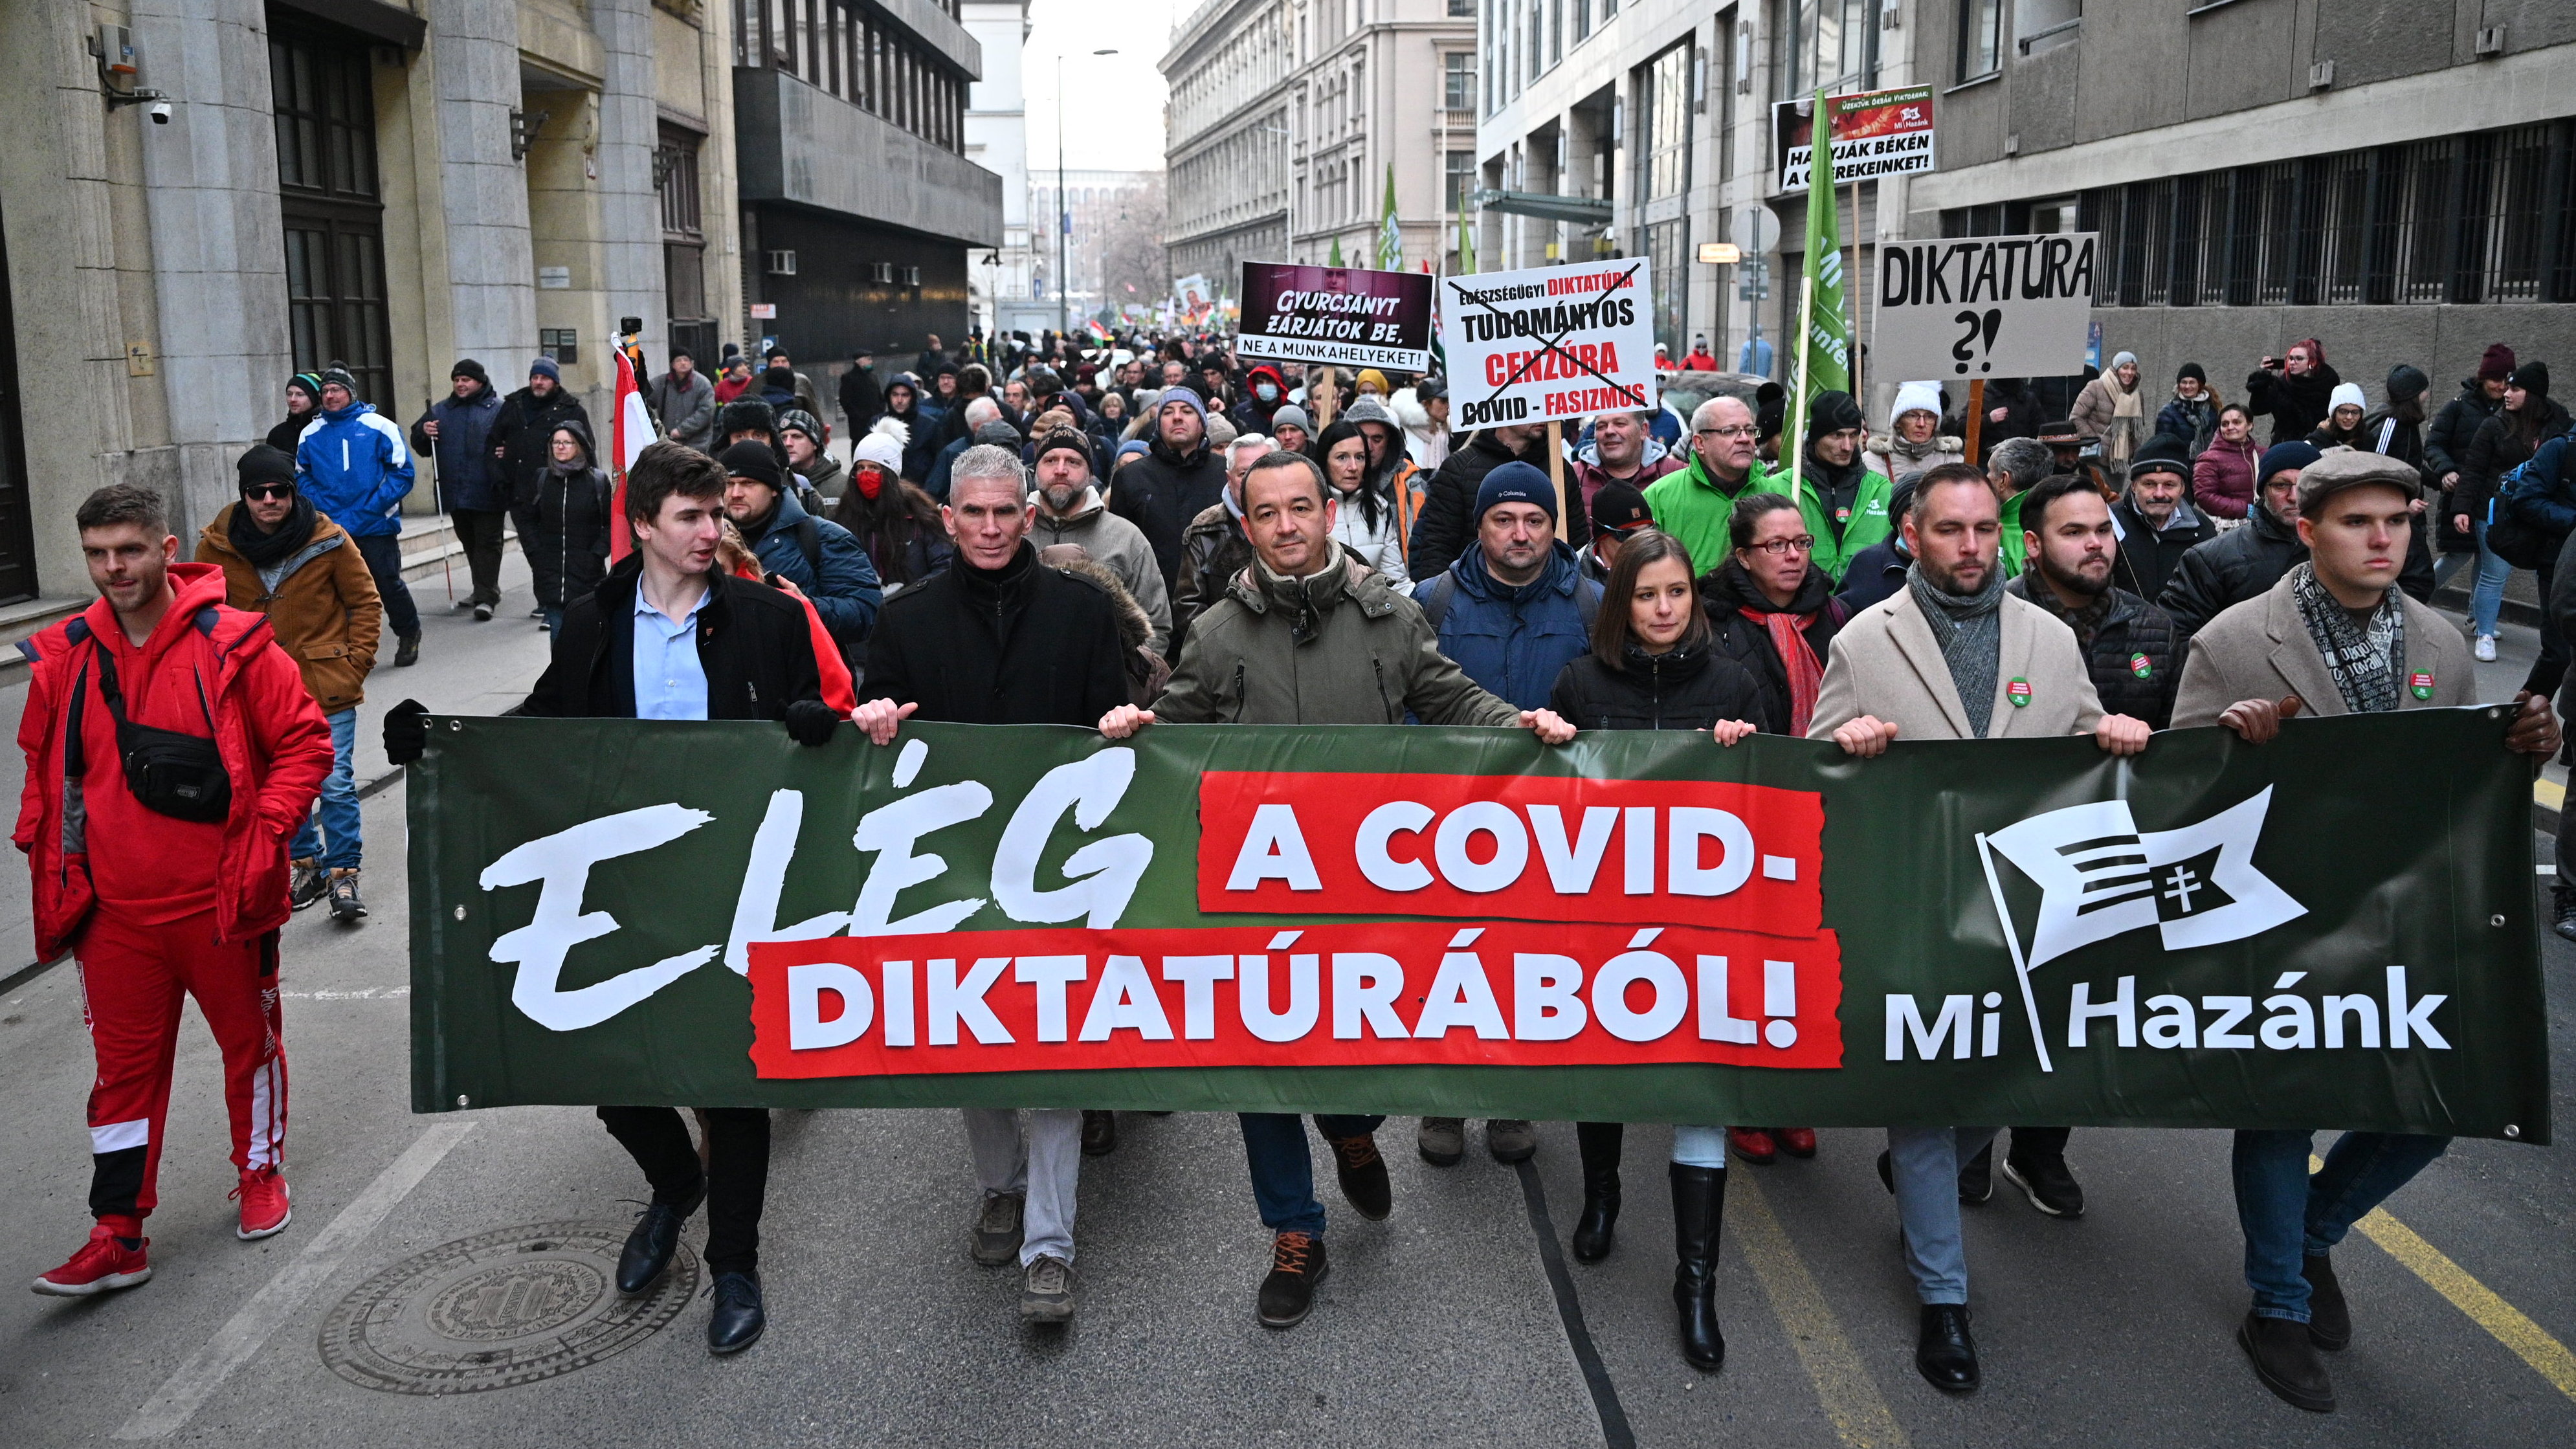 Covid-diktatúrázó demonstrációval melegít a választásra a Mi Hazánk | 24.hu